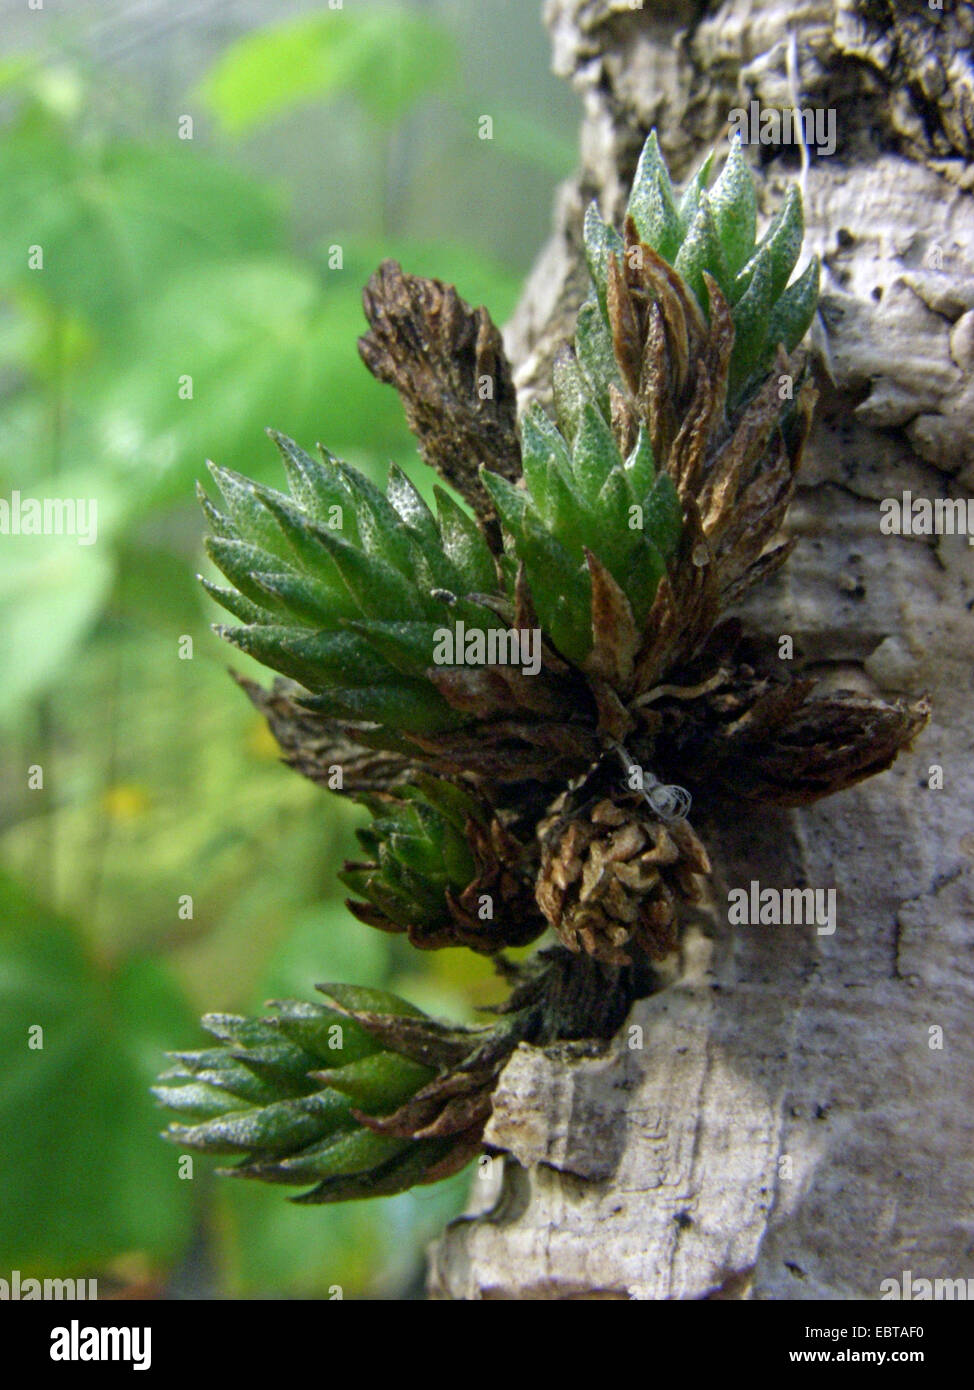 Tillandsia (Tillandsia bryoides), on a branch Stock Photo